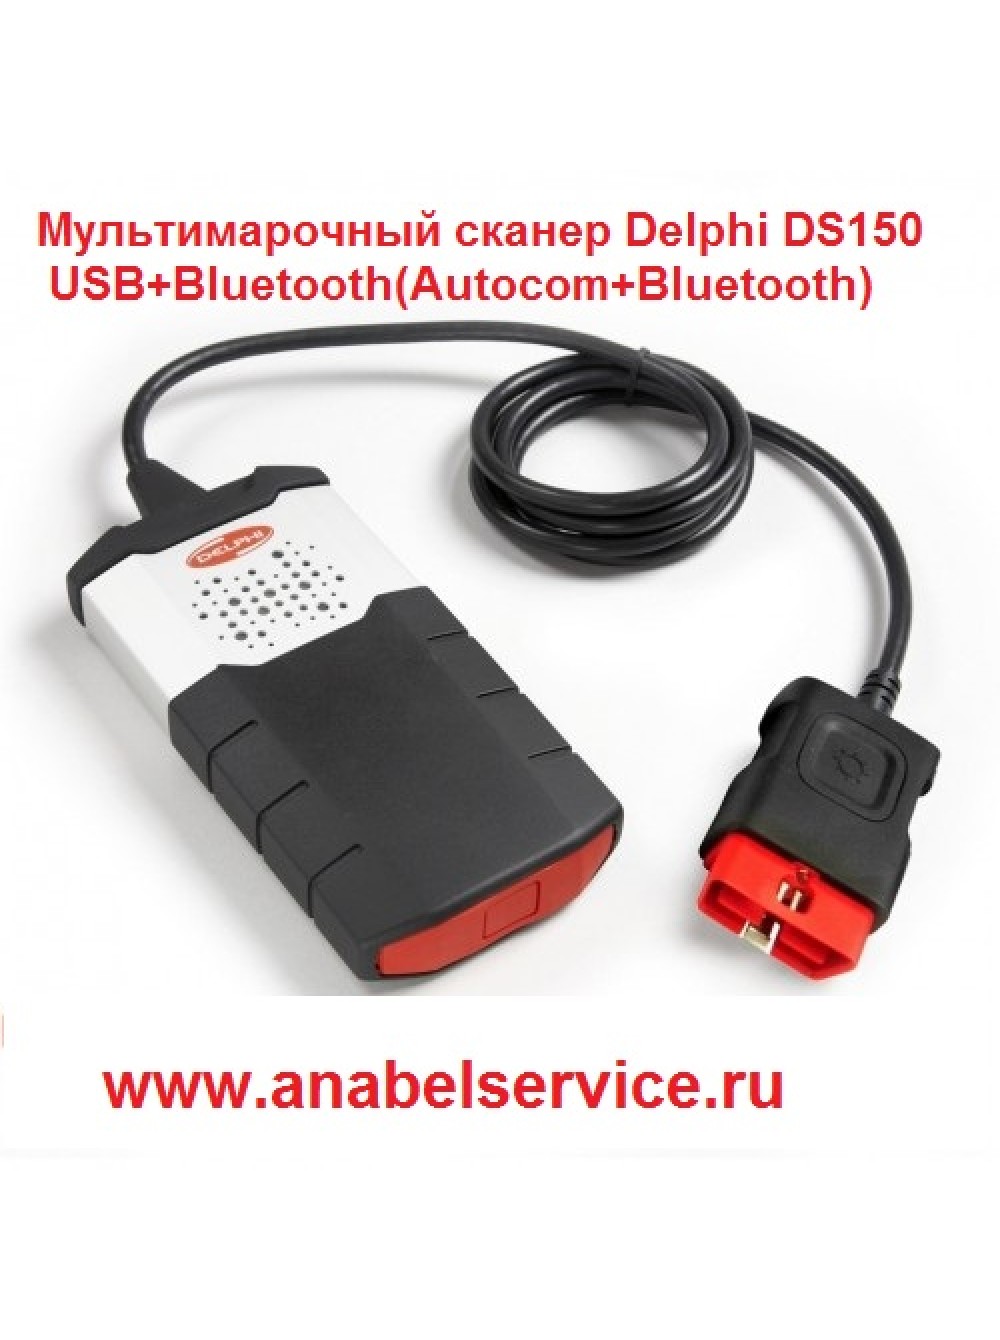 Автоком 59. Мультимарочный сканер DELPHI ds150e. DELPHI ds150e New VCI 2014. Автосканер Делфи 150. Диагностический сканер ОБД 2 USB.